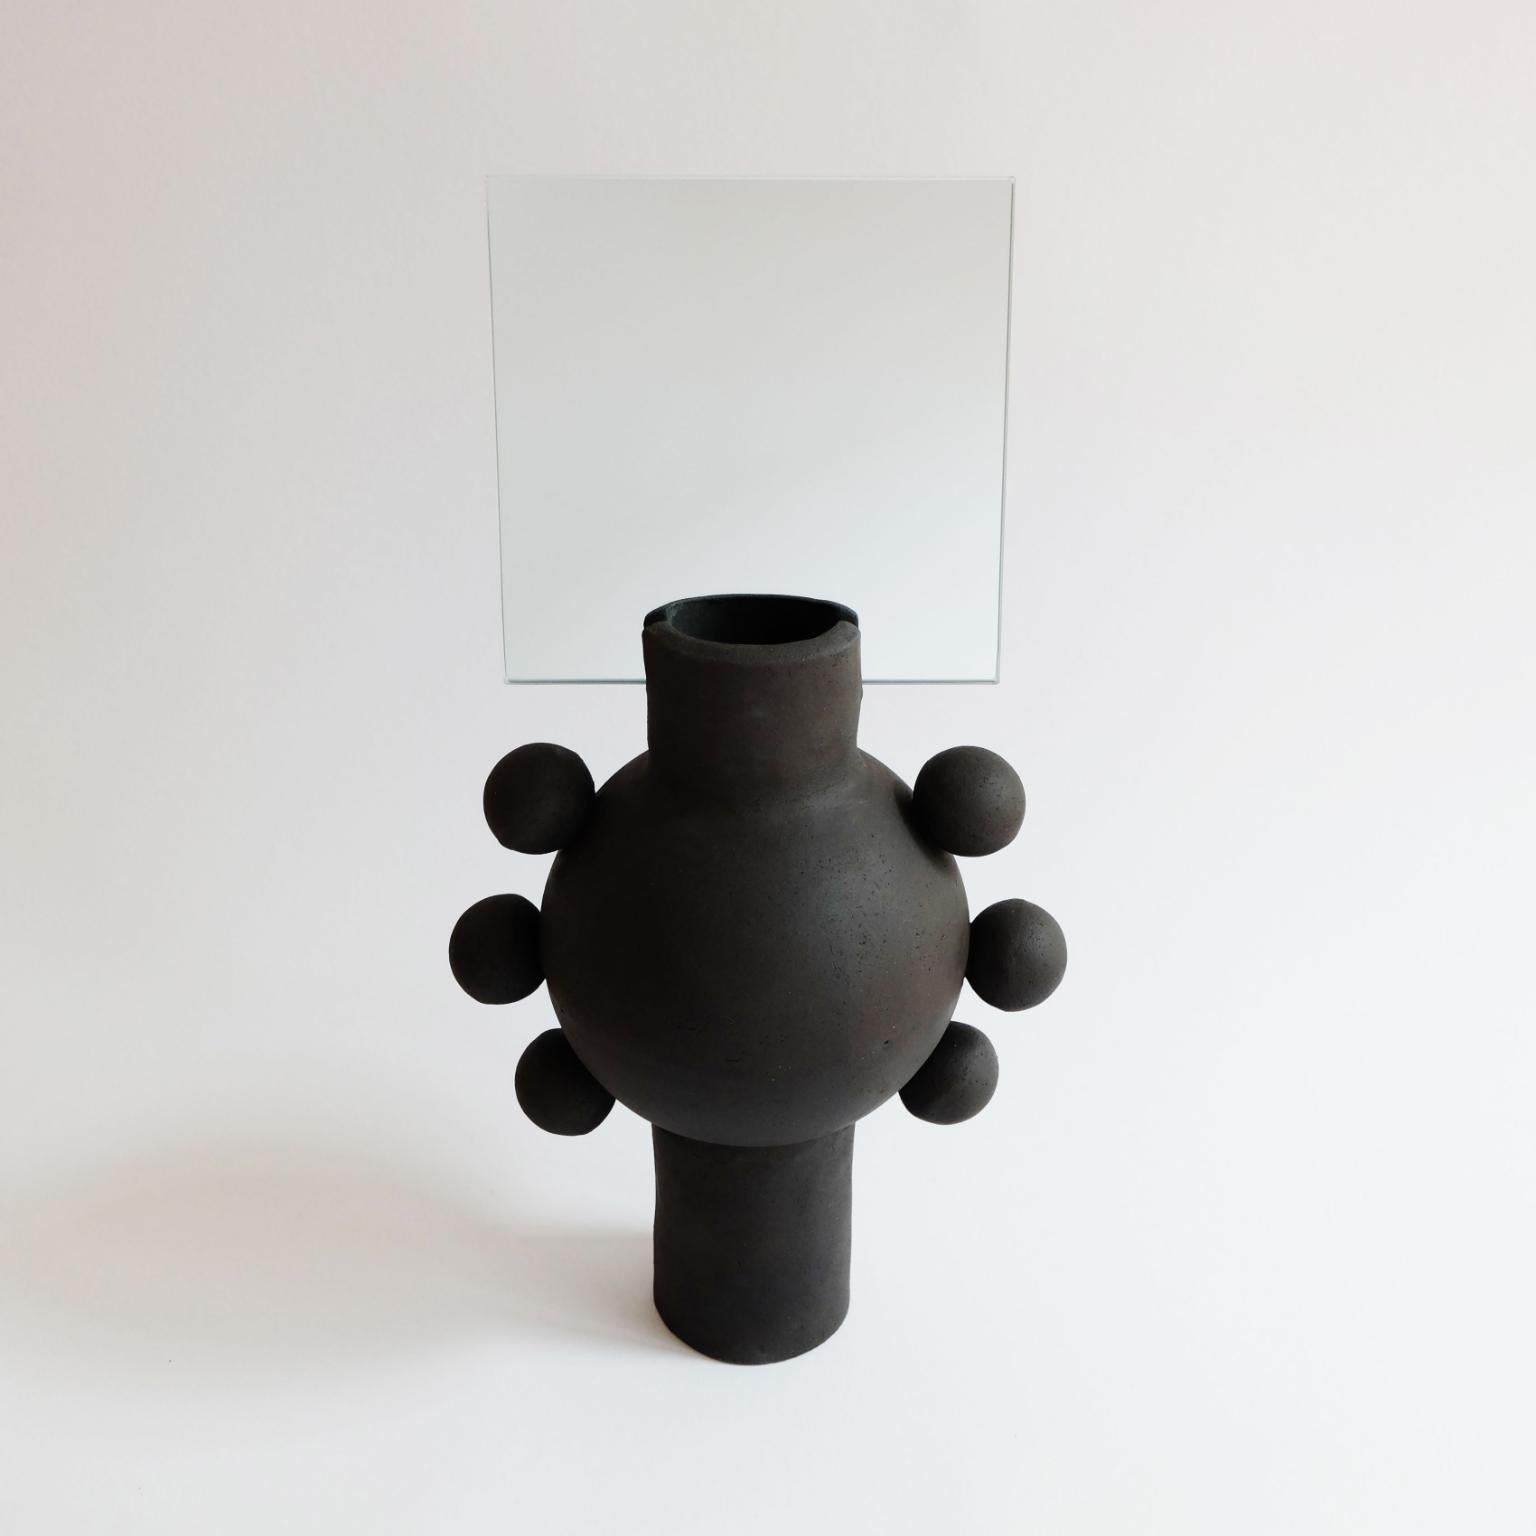 Miroir ovni unique de Ia Kutateladze
Dimensions : L 19 x H 38 cm
MATERIAL : Argile noire brute

UFO 01 est un miroir en céramique fabriqué à la main. Objet décoratif fonctionnel ludique et audacieux, pour différents types d'intérieurs.

IAAI / Ia